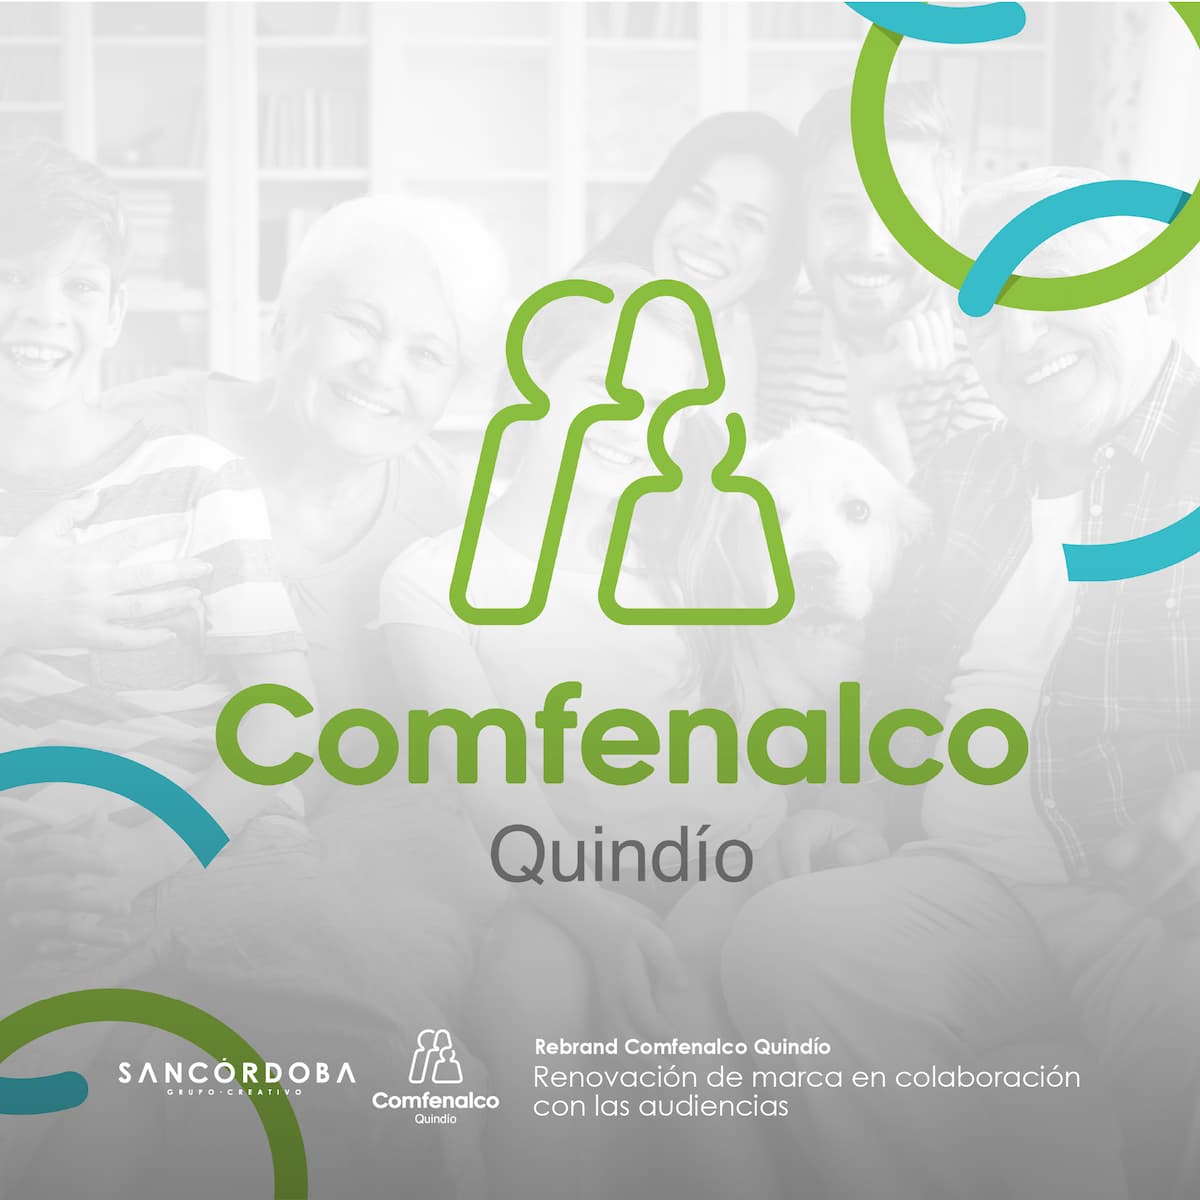 Sancordoba Rebrand Comfenalco Quindio